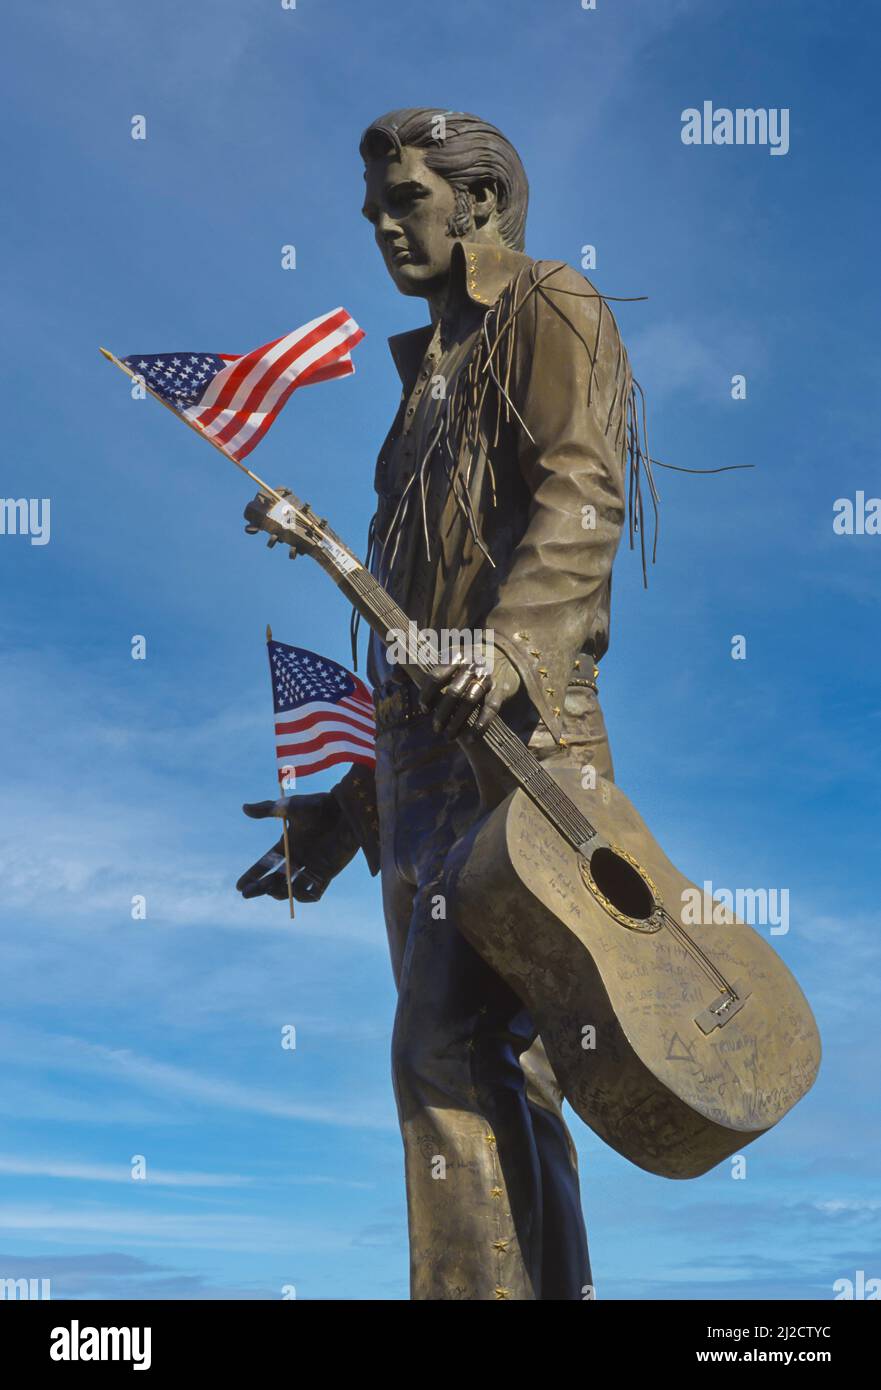 MEMPHIS, TENNESSEE, EE.UU. - Estatua del músico Elvis Presley, en la calle Beale, con banderas americanas. Foto de stock